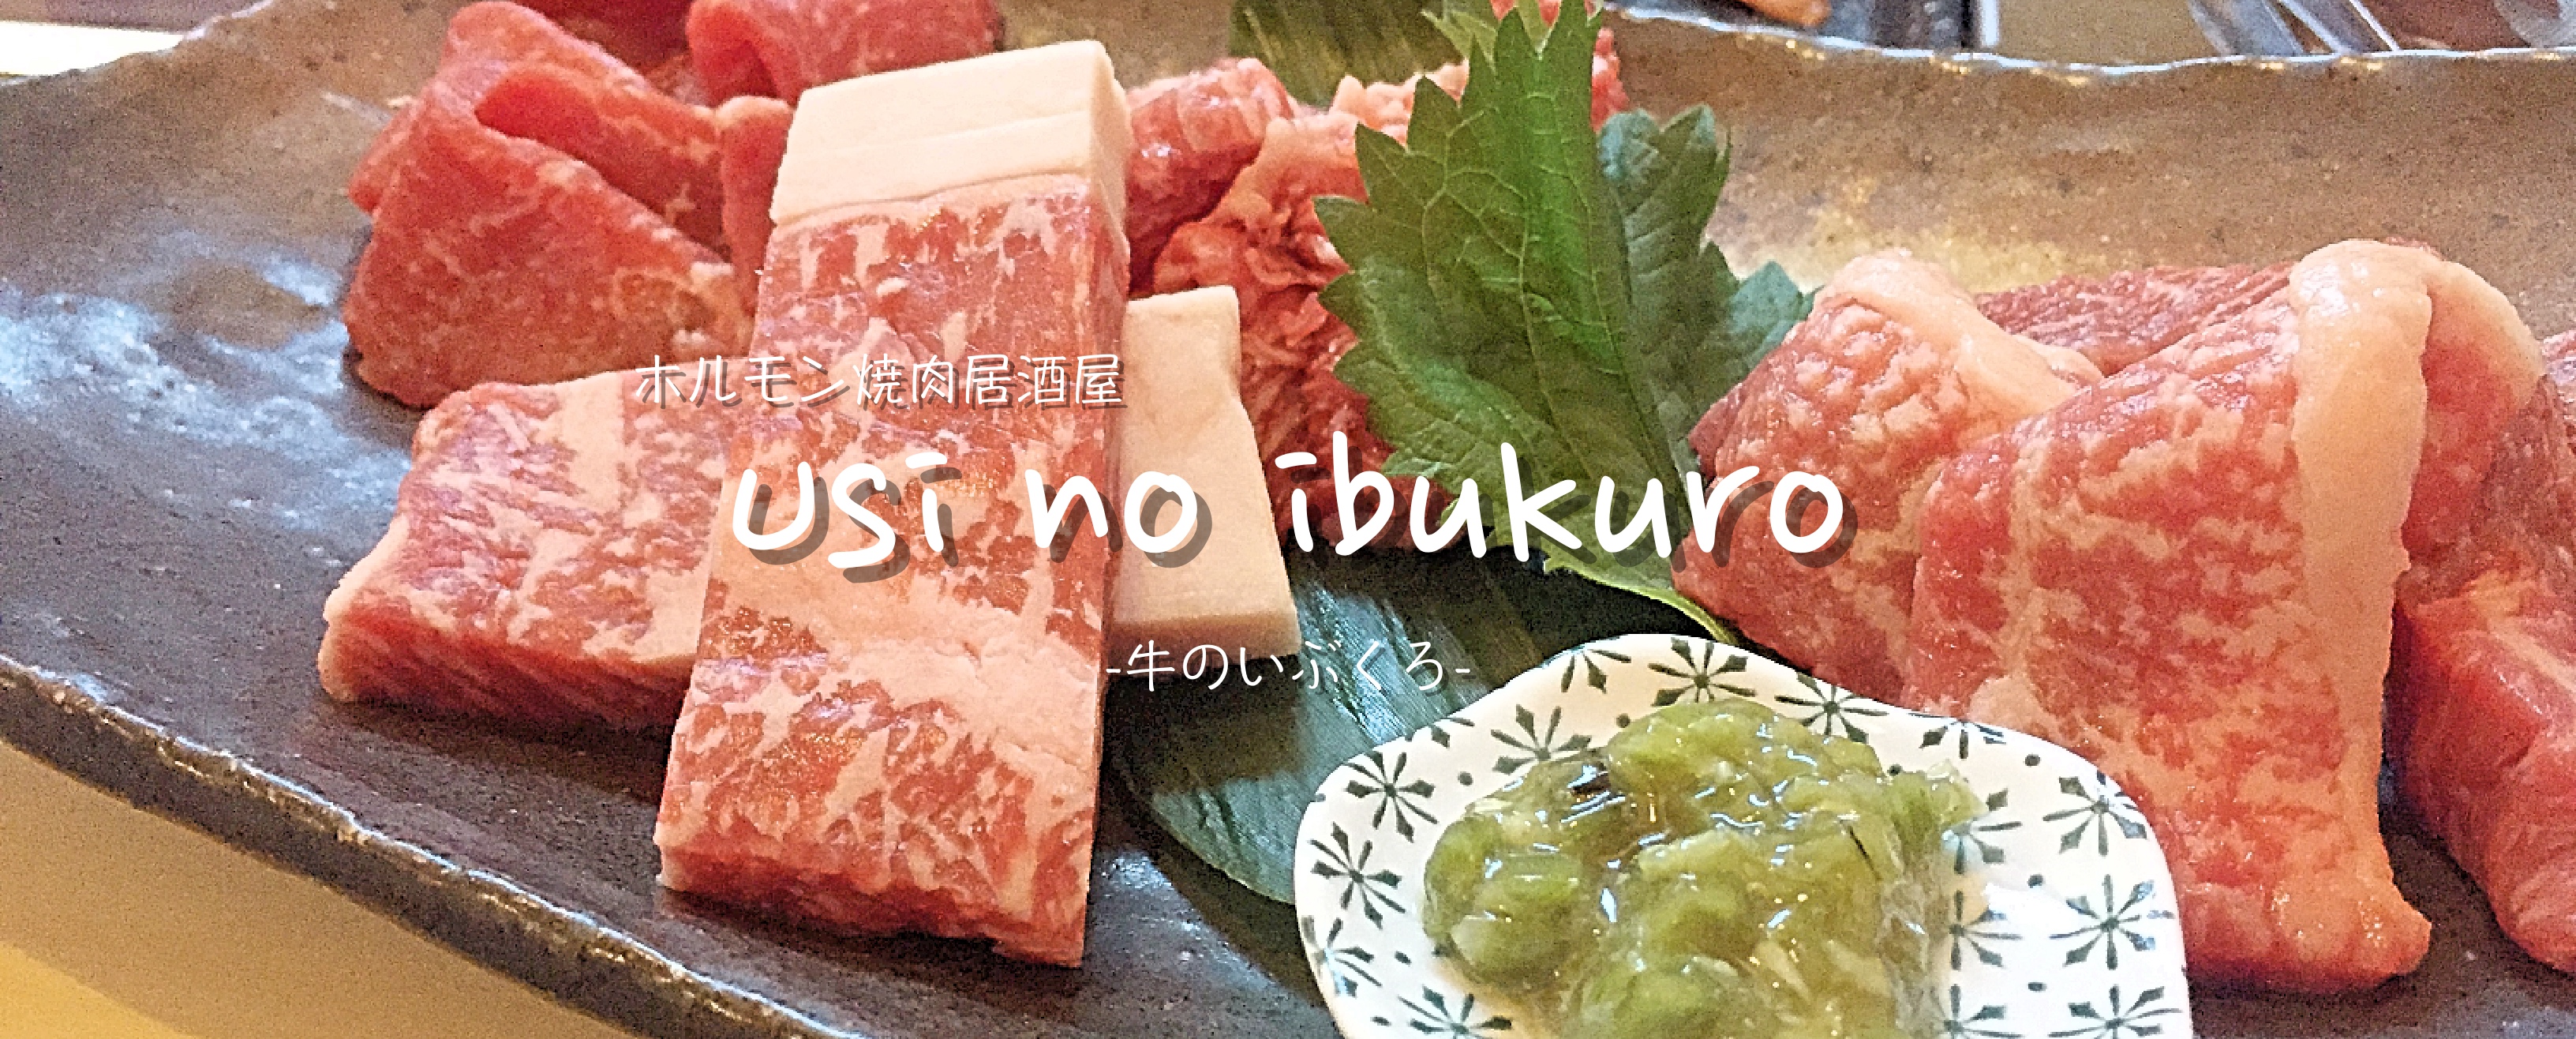 今帰仁の和牛が食べられる店 Usi No Ibukuro 牛のいぶくろ 沖縄のひとつ宿tinto Tinto